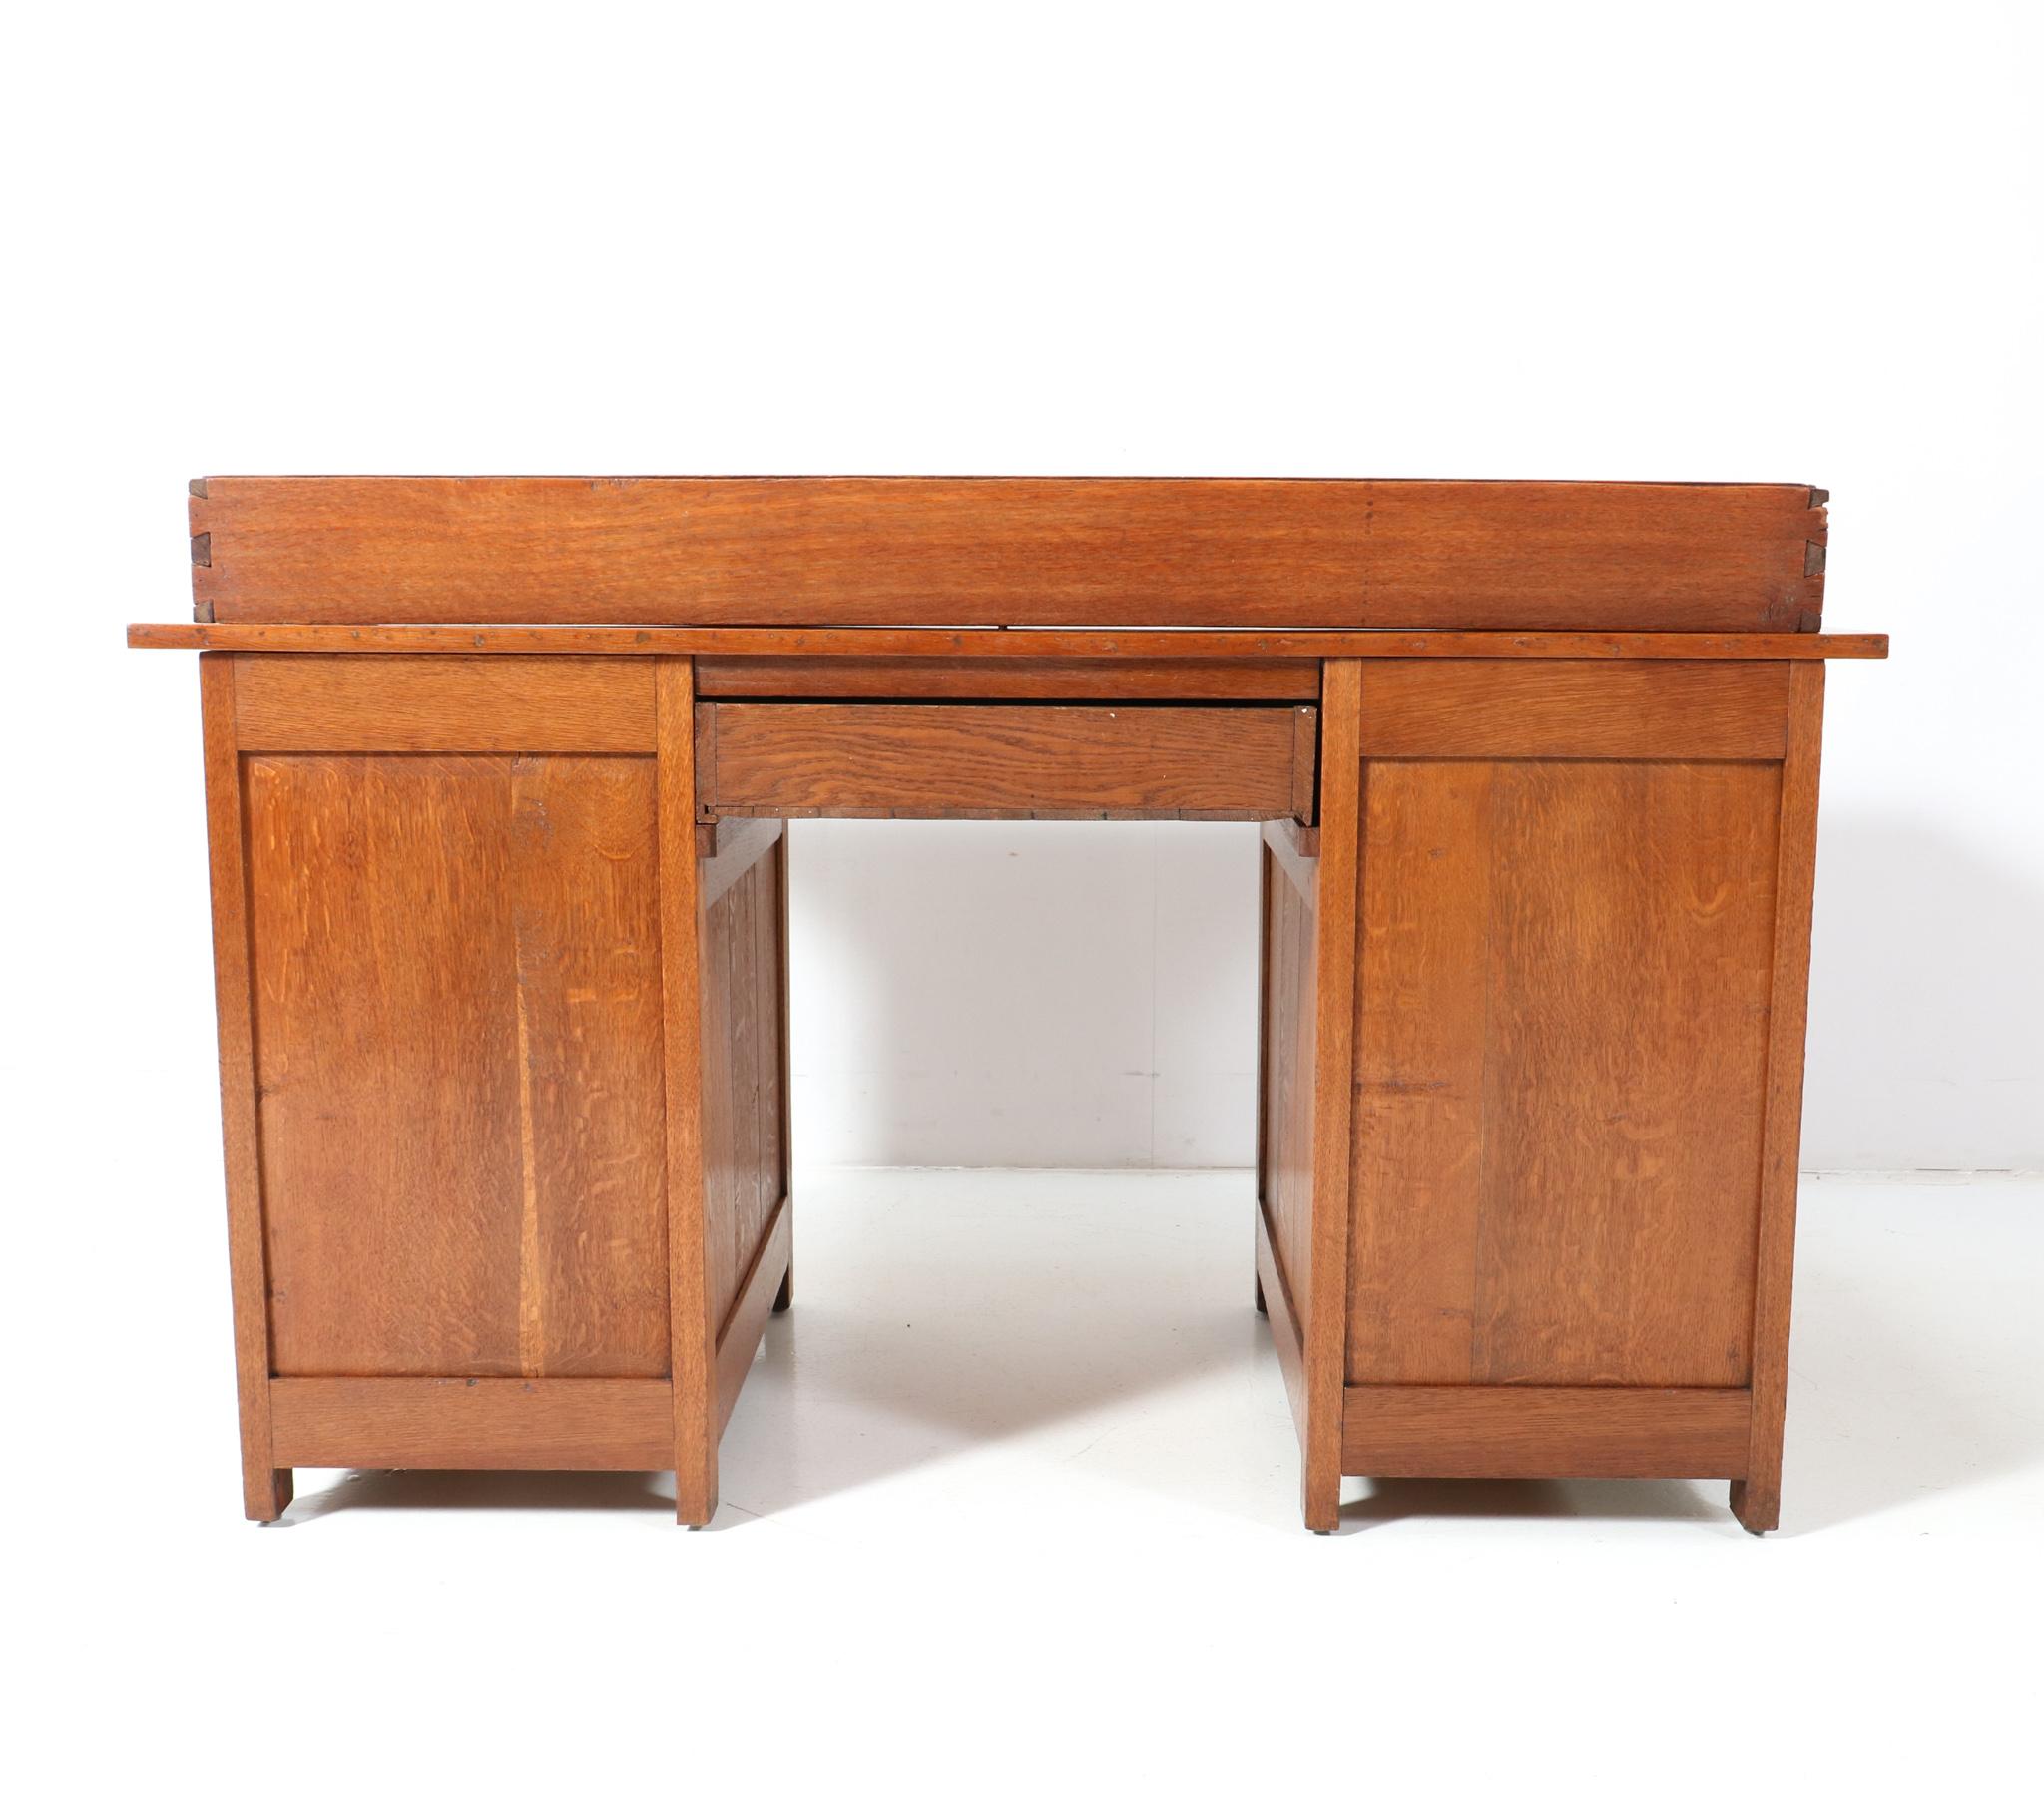 Late 19th Century Oak Arts & Crafts Pedestal Desk by Alexander J. Kropholler, 1890s For Sale